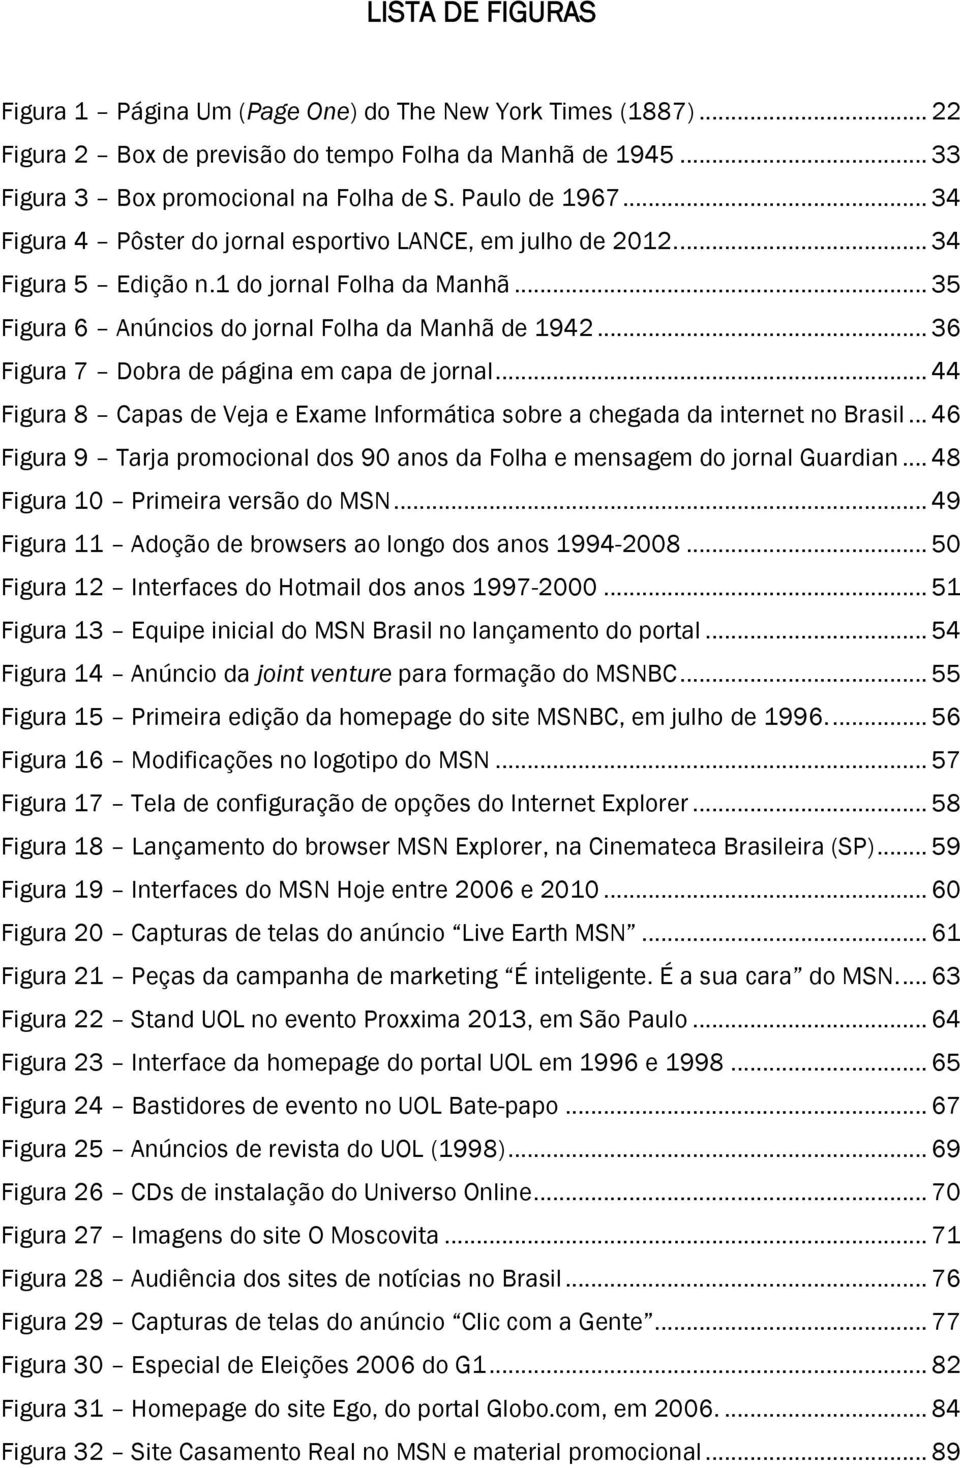 .. 36 Figura 7 Dobra de página em capa de jornal... 44 Figura 8 Capas de Veja e Exame Informática sobre a chegada da internet no Brasil.